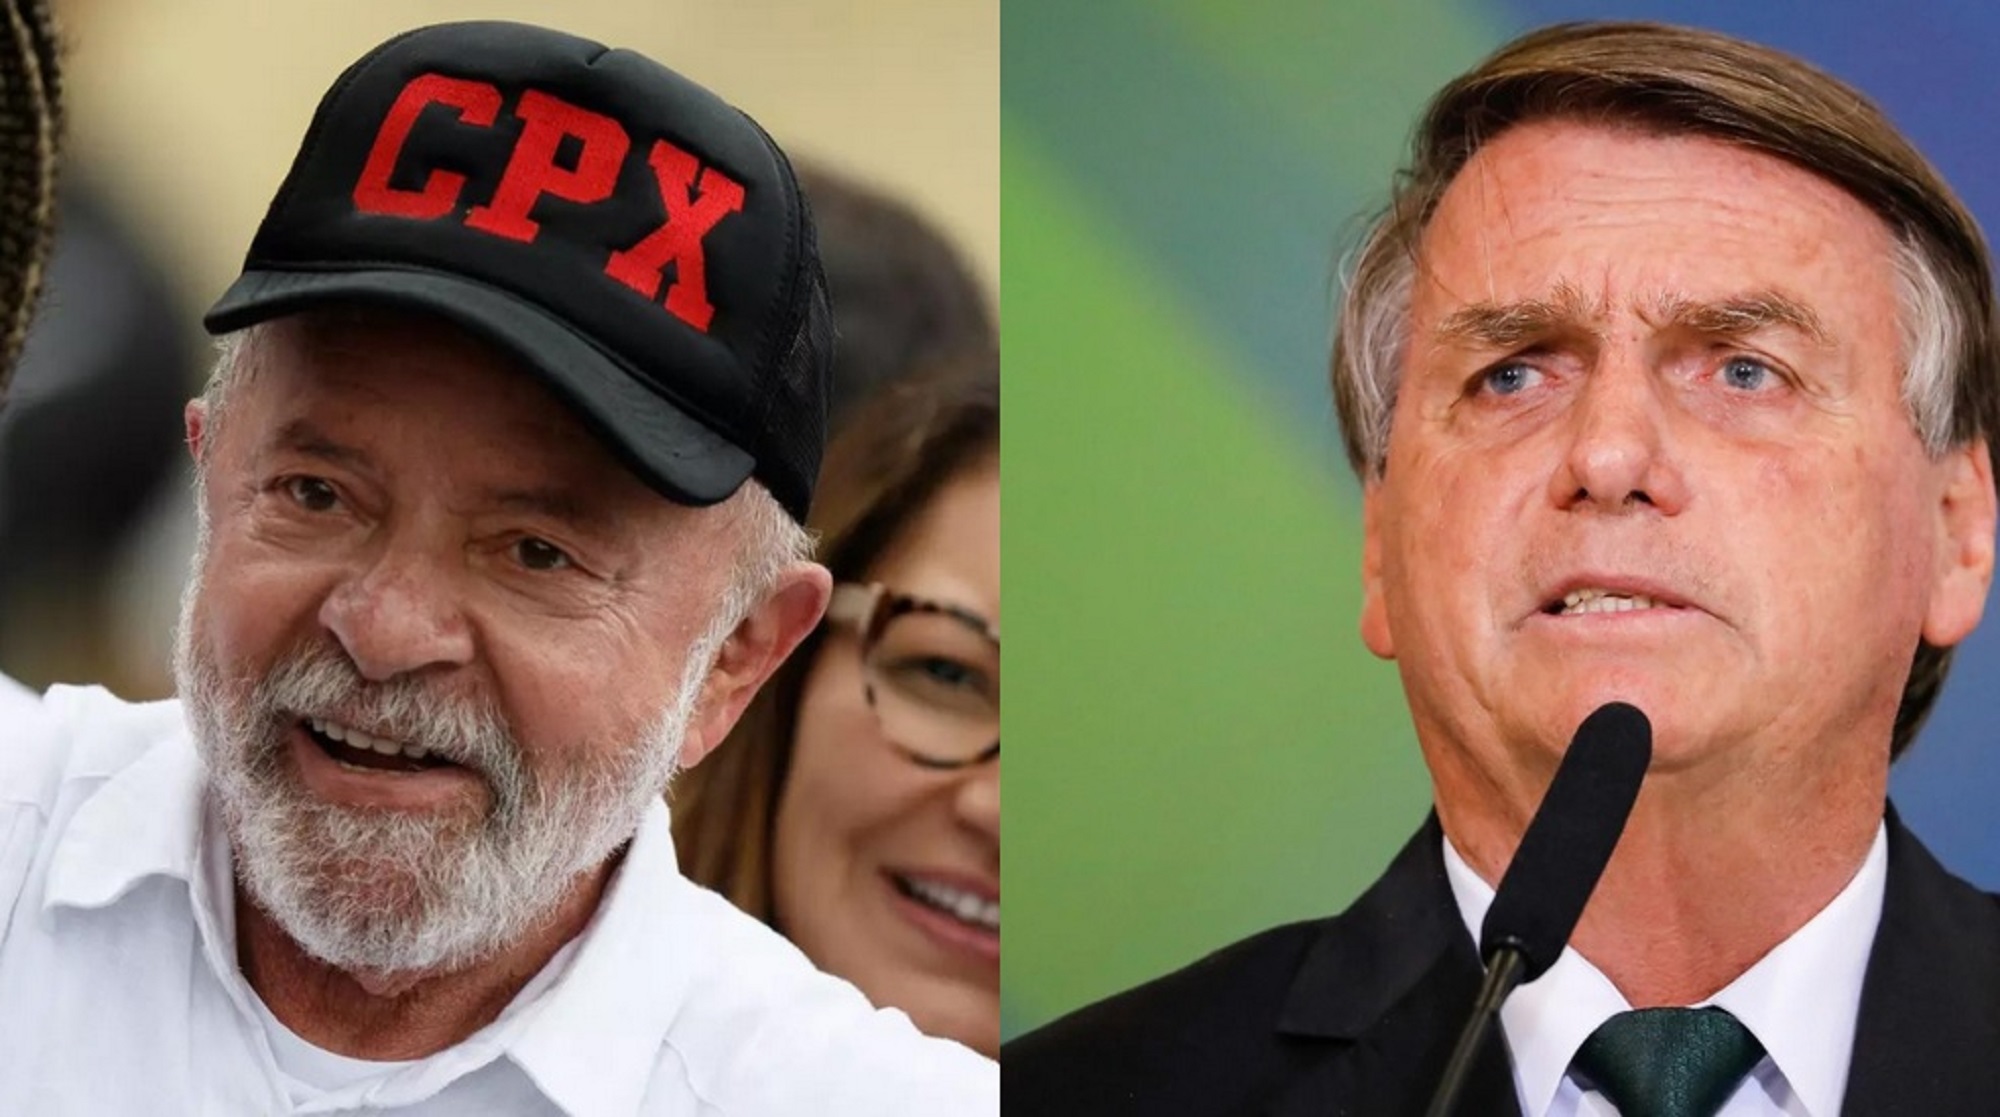 CPX: boné com sigla de 'complexo' foi presente de líder comunitário a Lula;  'recebi encomenda de 200', diz dono de confecção, Rio de Janeiro